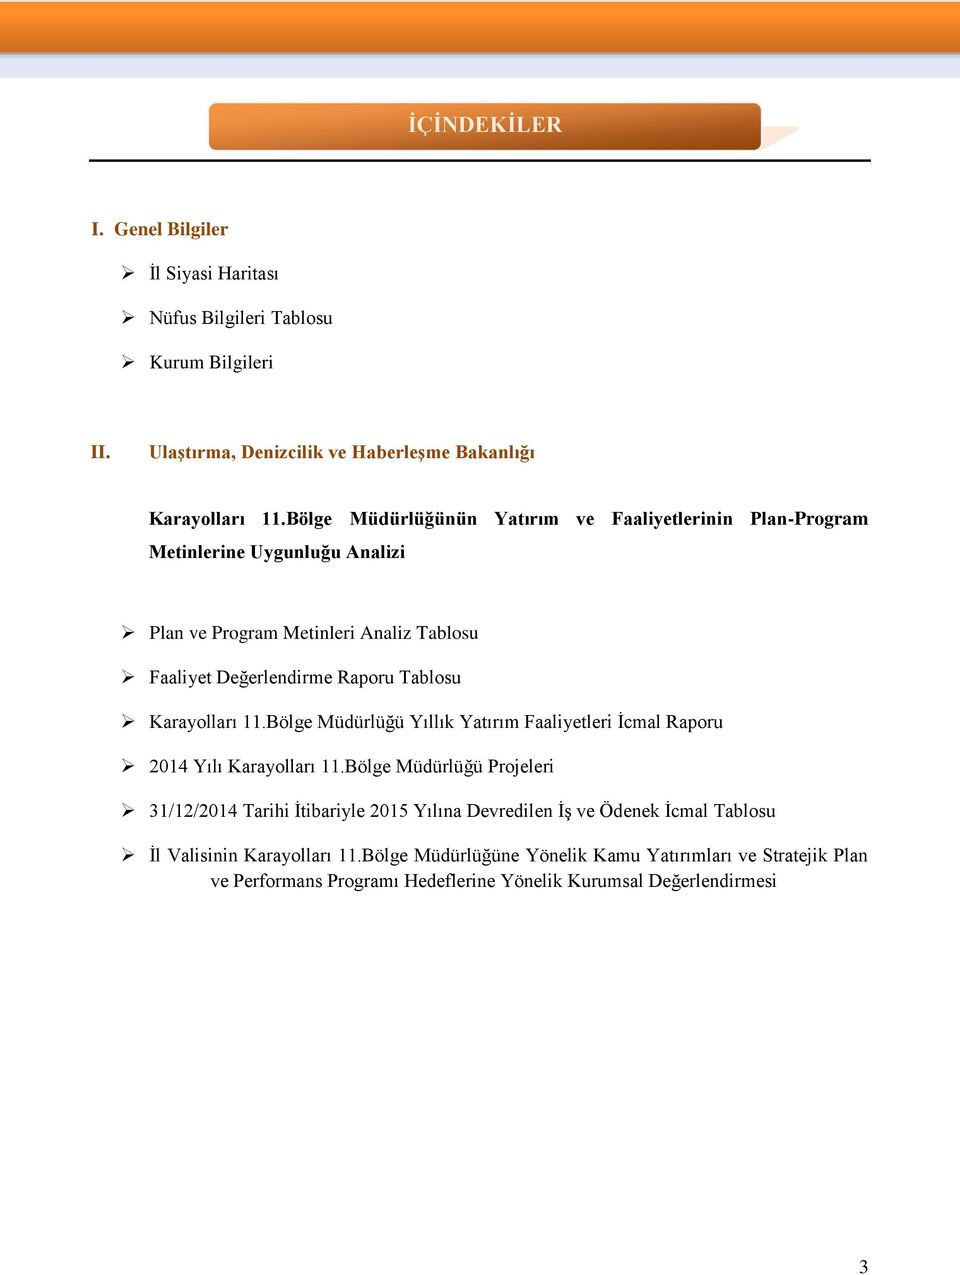 Metinleri Analiz Tablosu Faaliyet Değerlendirme Raporu Tablosu Yıllık Yatırım Faaliyetleri İcmal Raporu 2014 Yılı Projeleri 31/12/2014